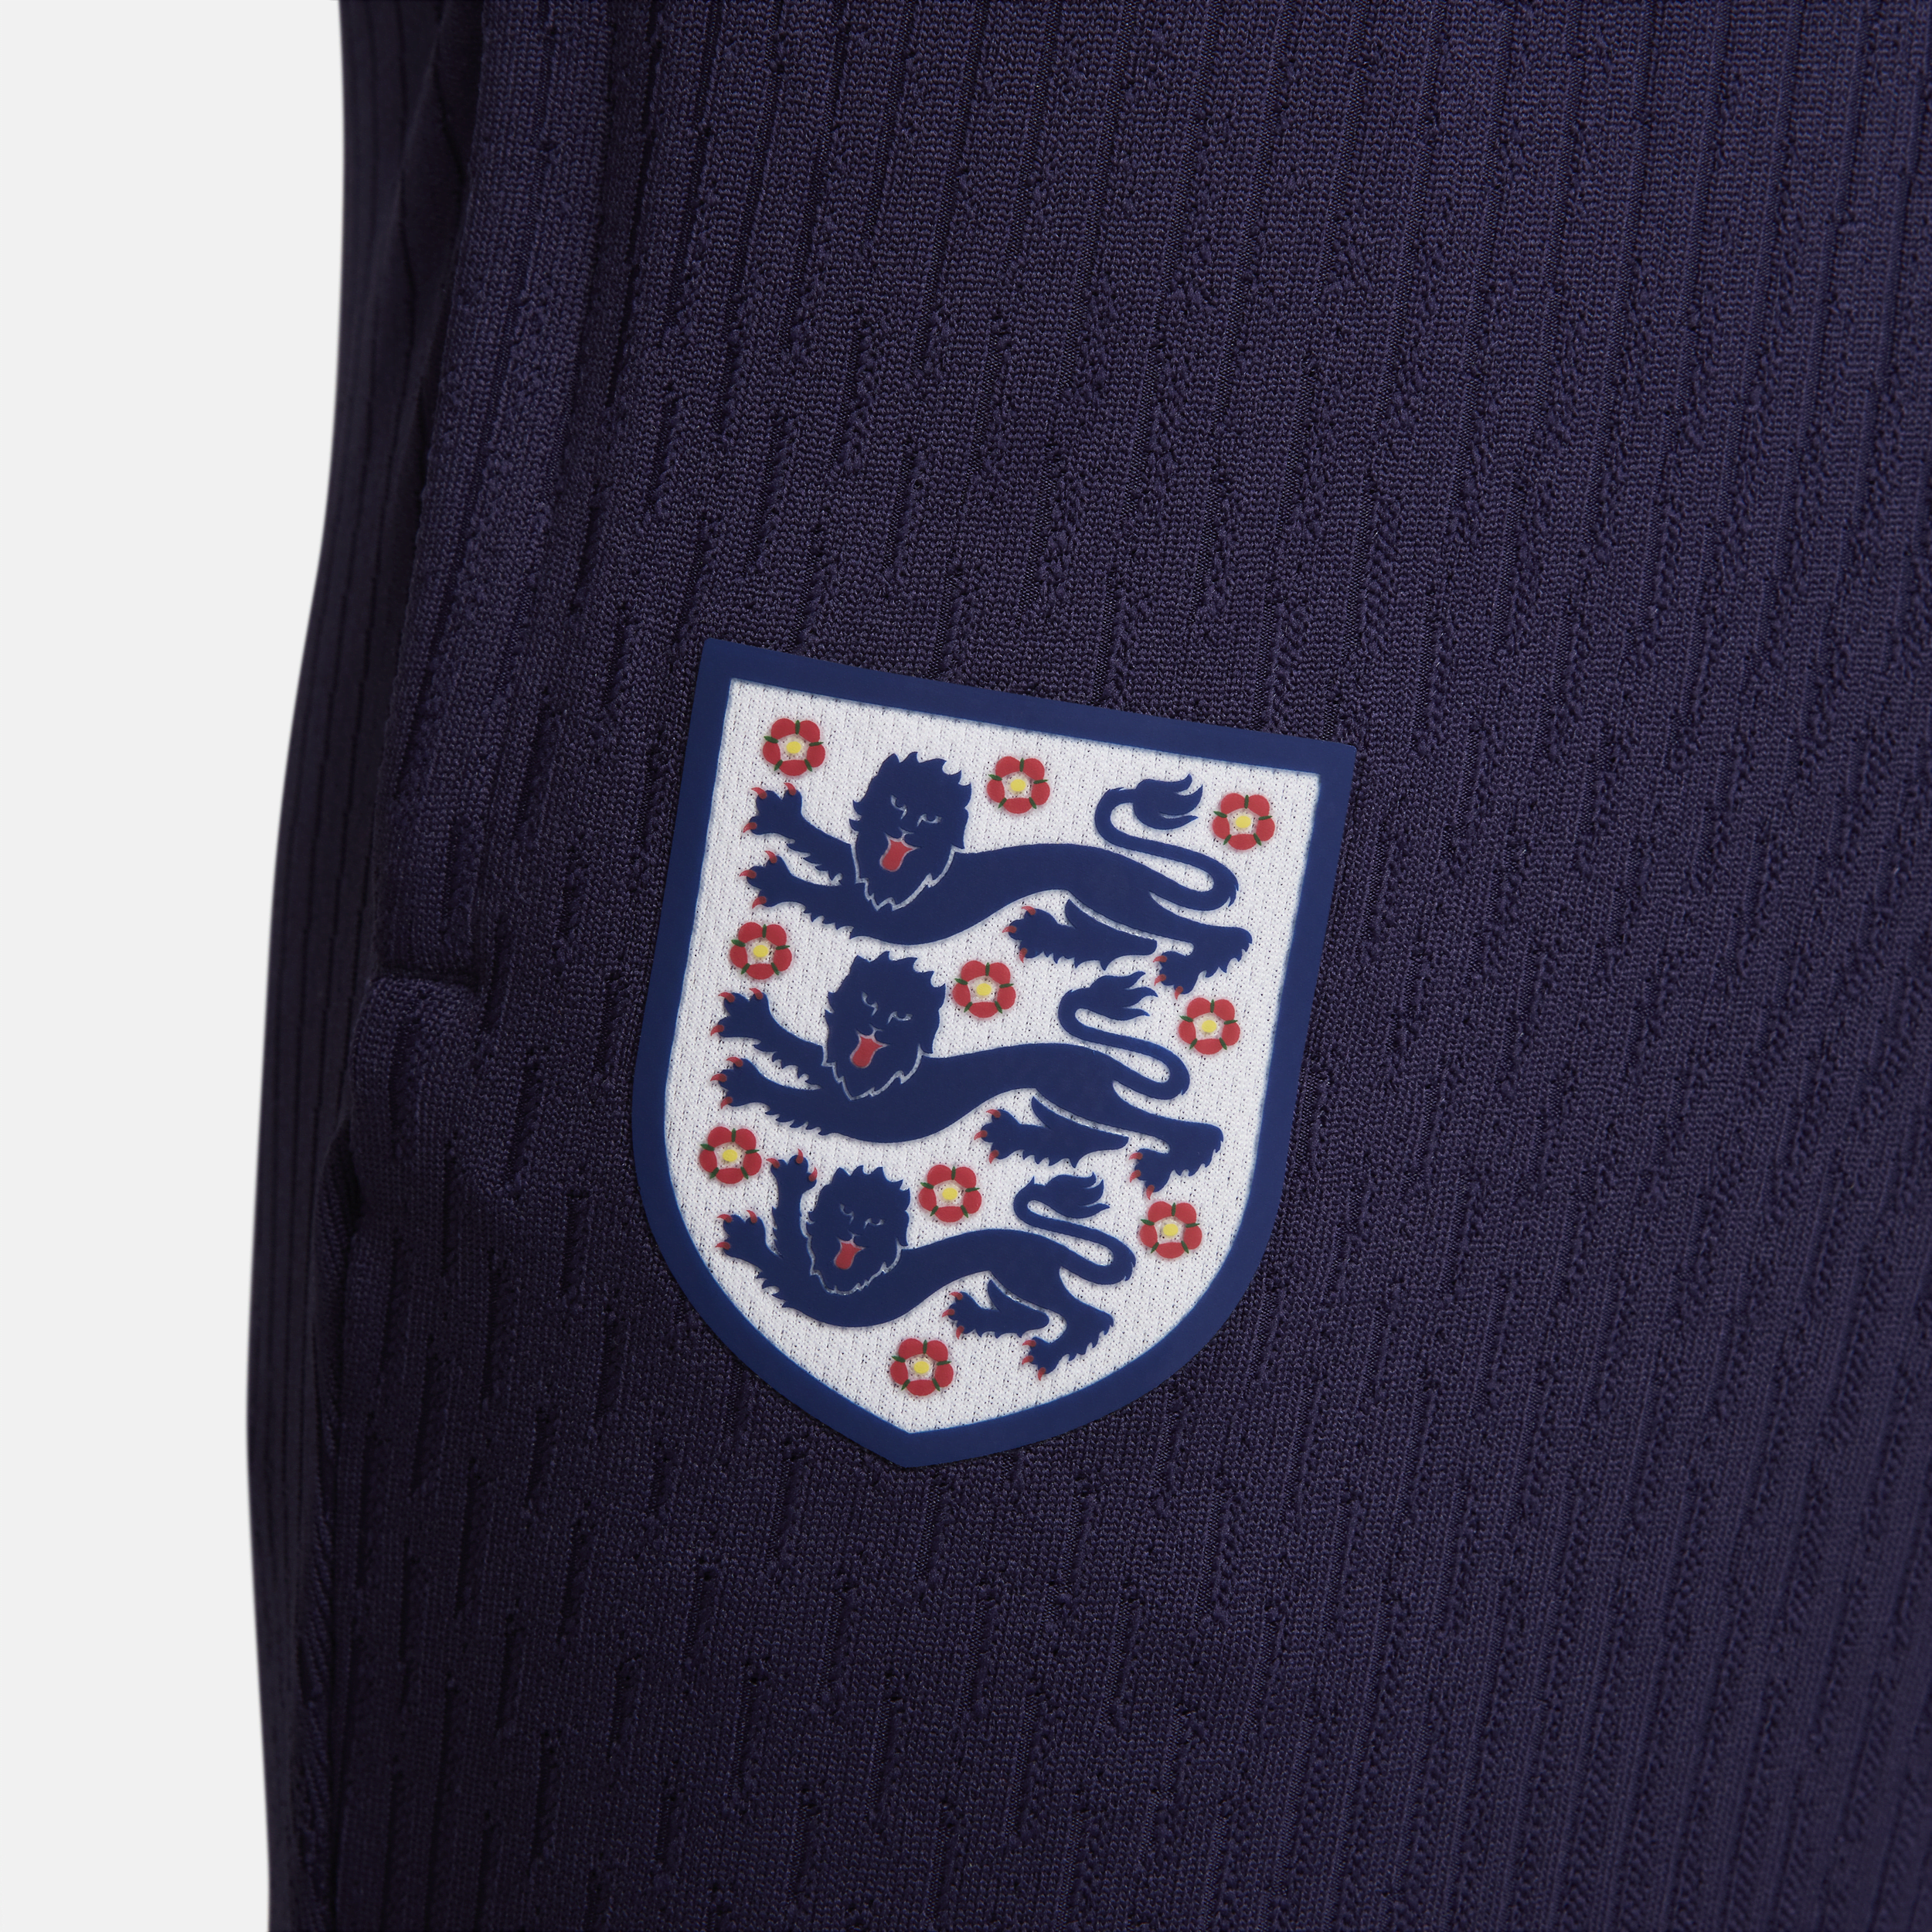 Nike Engeland Strike Elite Dri-FIT ADV knit voetbalbroek voor heren Paars